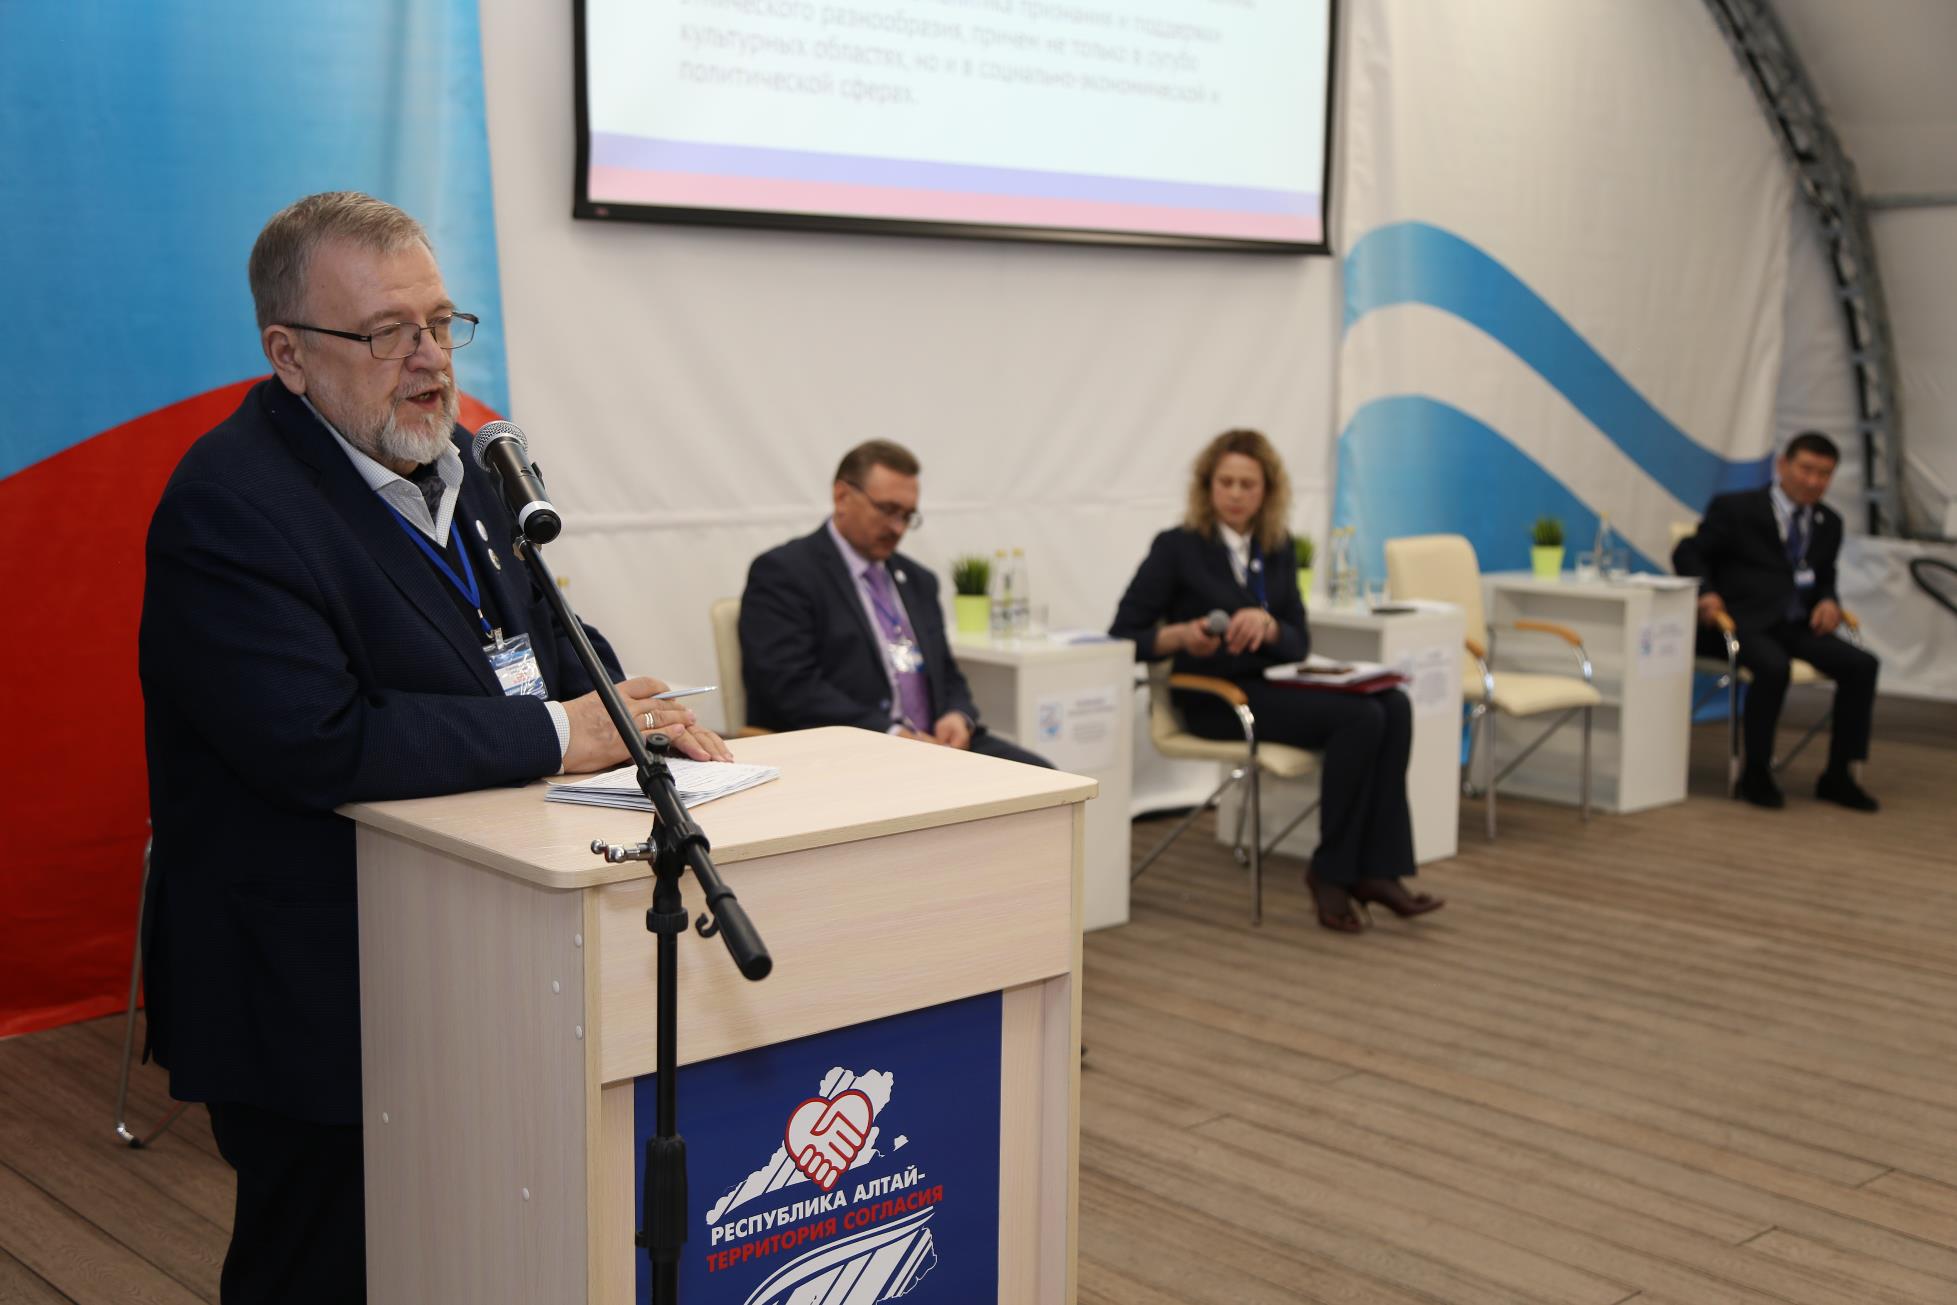 Пятая республиканская конференция «Республика Алтай – территория согласия» состоялась в регионе